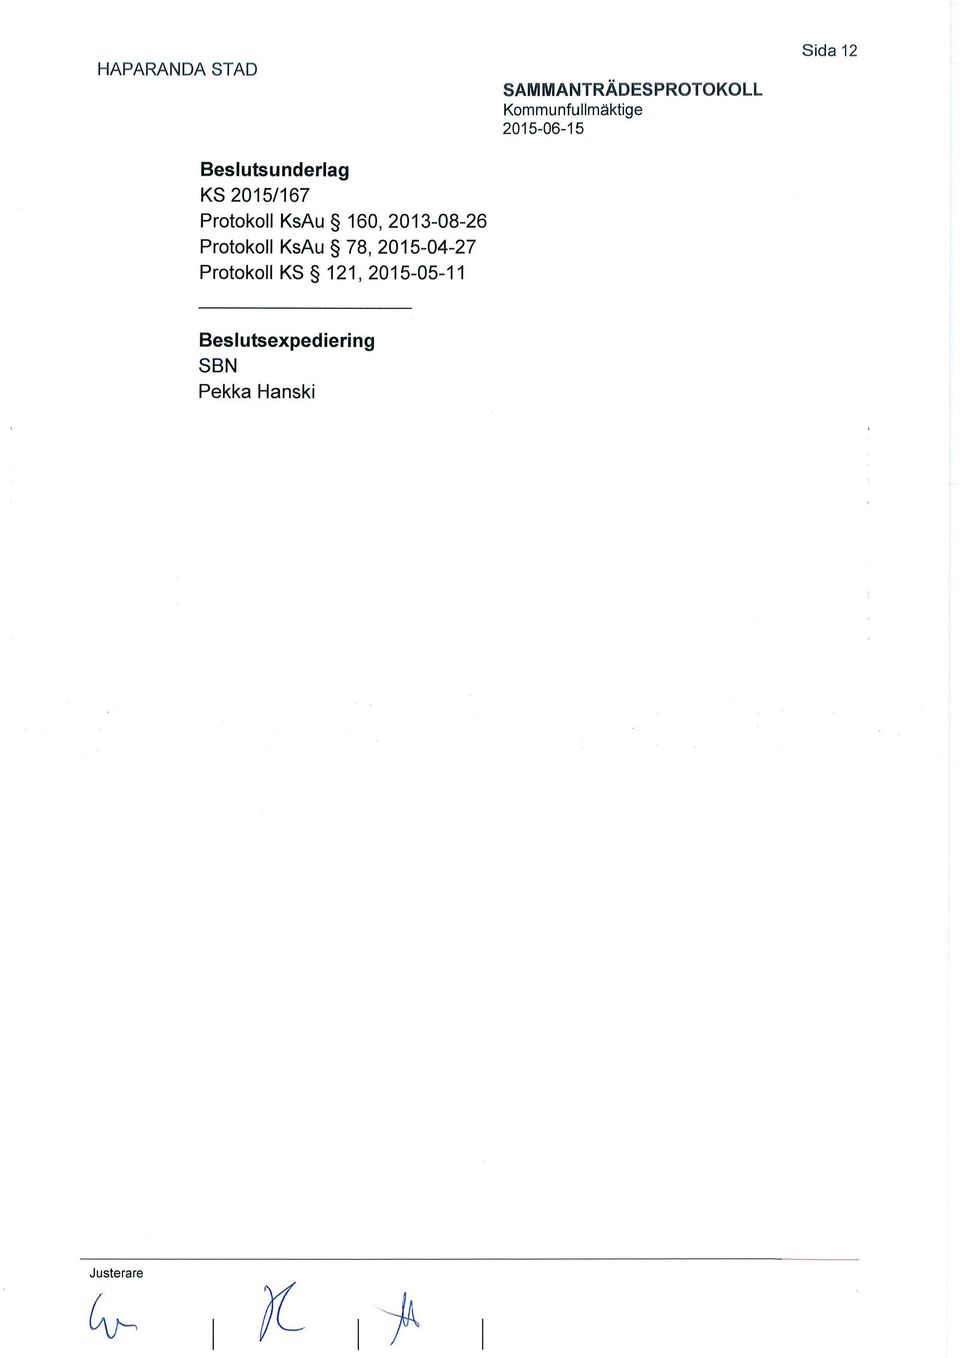 2015-04-27 Protokoll KS 121, 2015-05-11